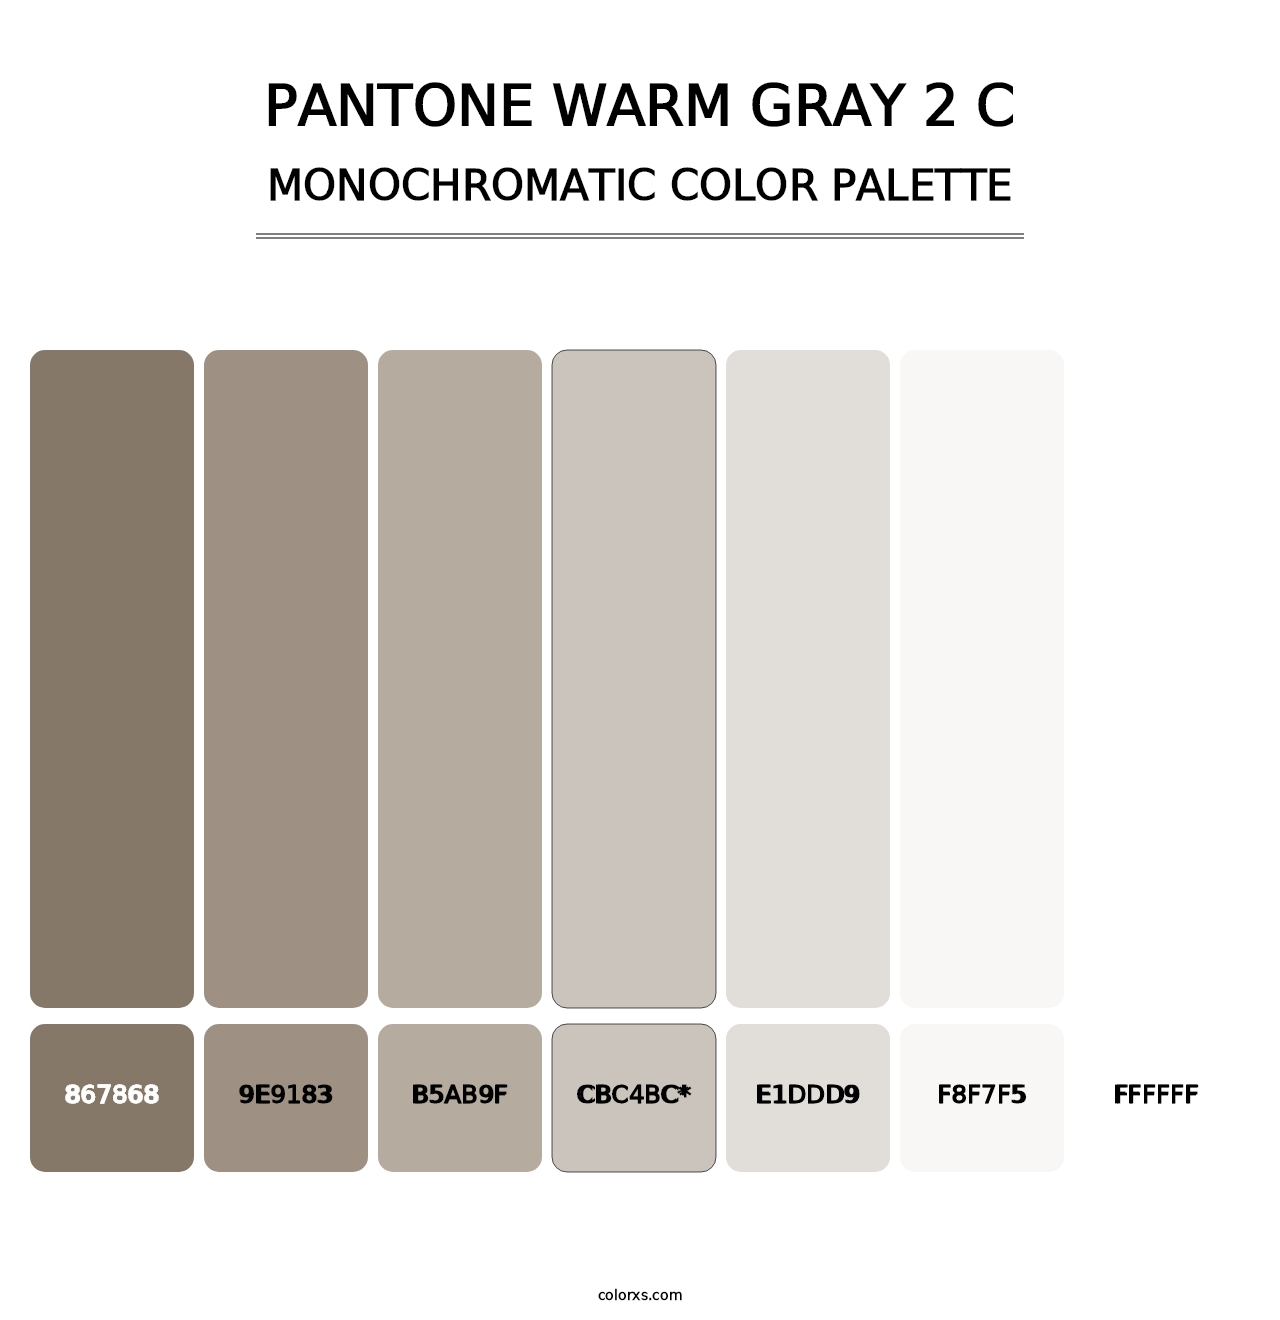 PANTONE Warm Gray 2 C - Monochromatic Color Palette